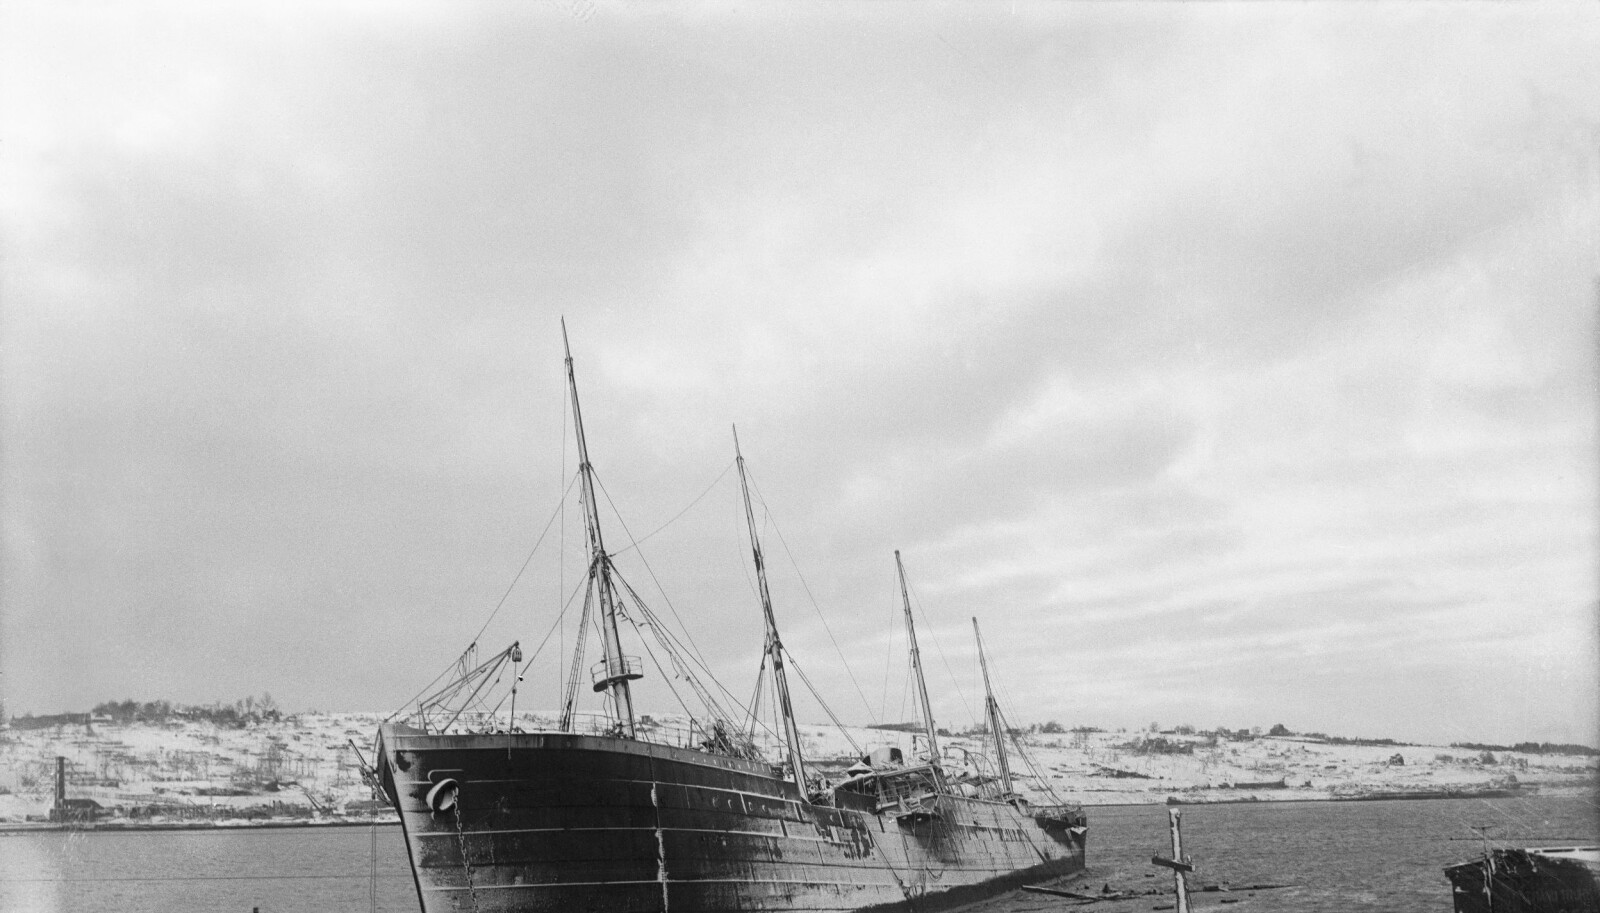 <b>REPARERT:</b> Ironisk nok slapp «Imo» nesten uskadet unna eksplosjonen og den senere tsunamien. Skipet ble senere reparert og ble i 1919 satt i drift igjen som støtteskip for hvalfangere under navnet «Guvernøren».